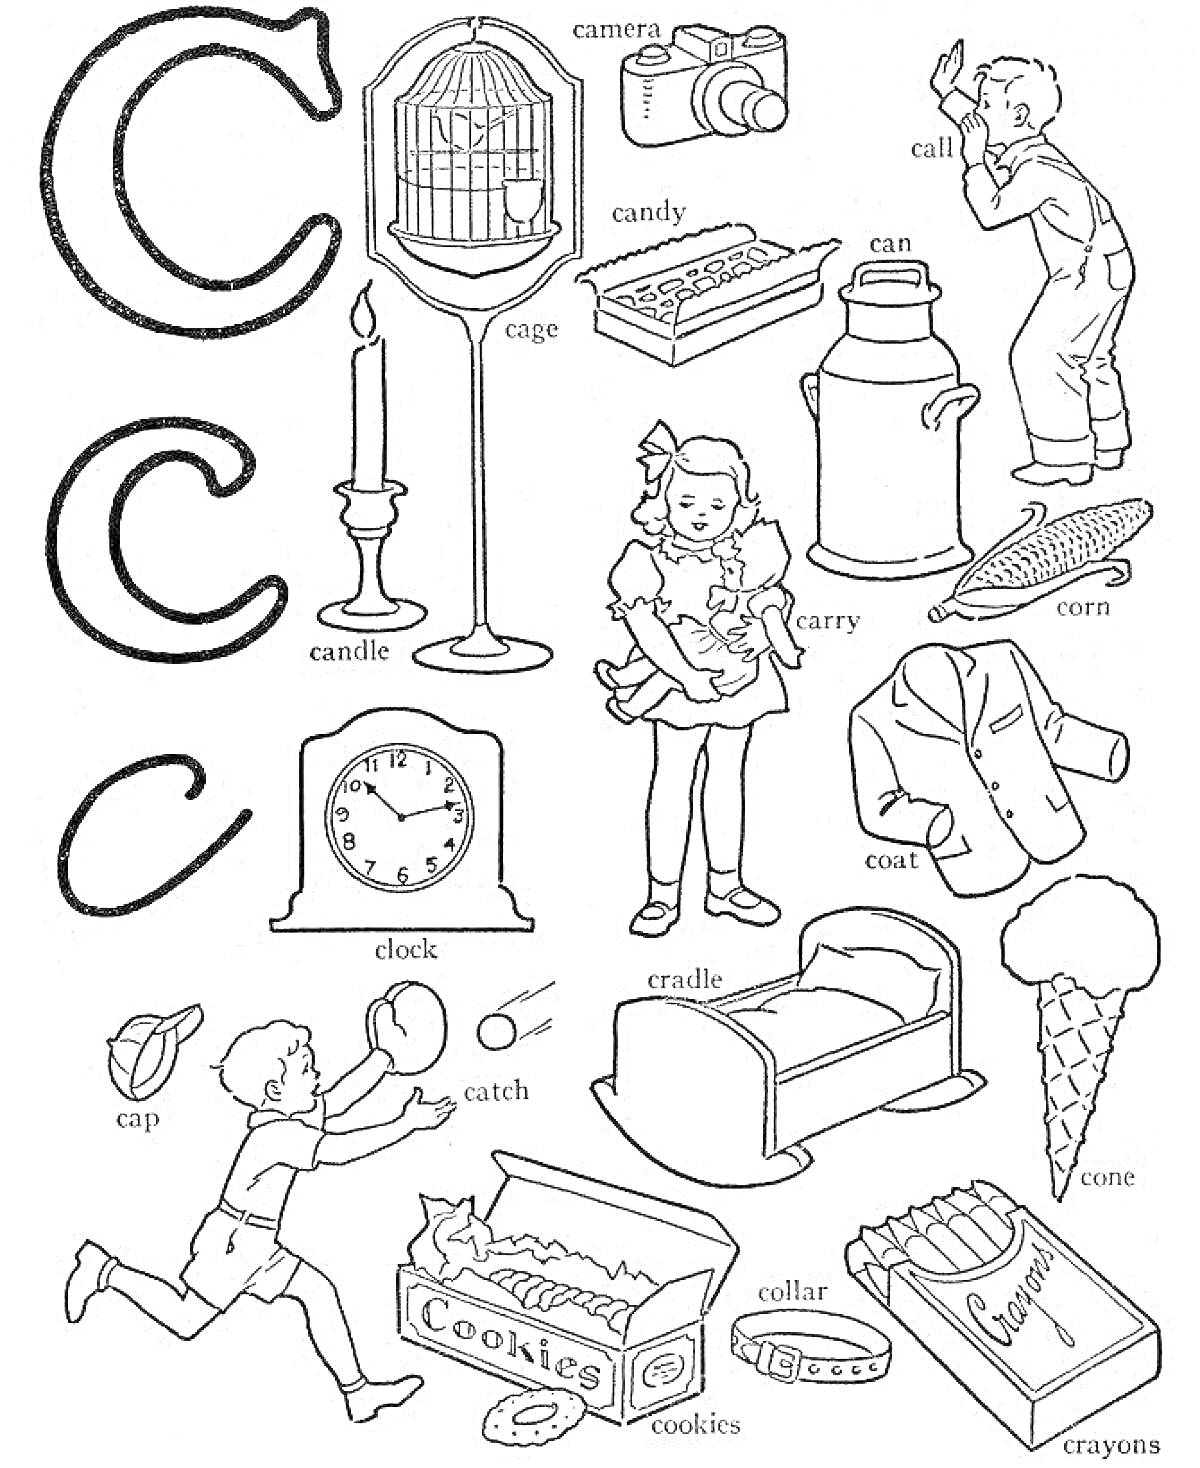 Буква C: клетка, камера, конфета, банка, кальян, свеча, молочник, кукуруза, мальчик, кепка, поймать, часы, кроватка, девочка, колыбель, пальто, печенье, мороженое, карандаши